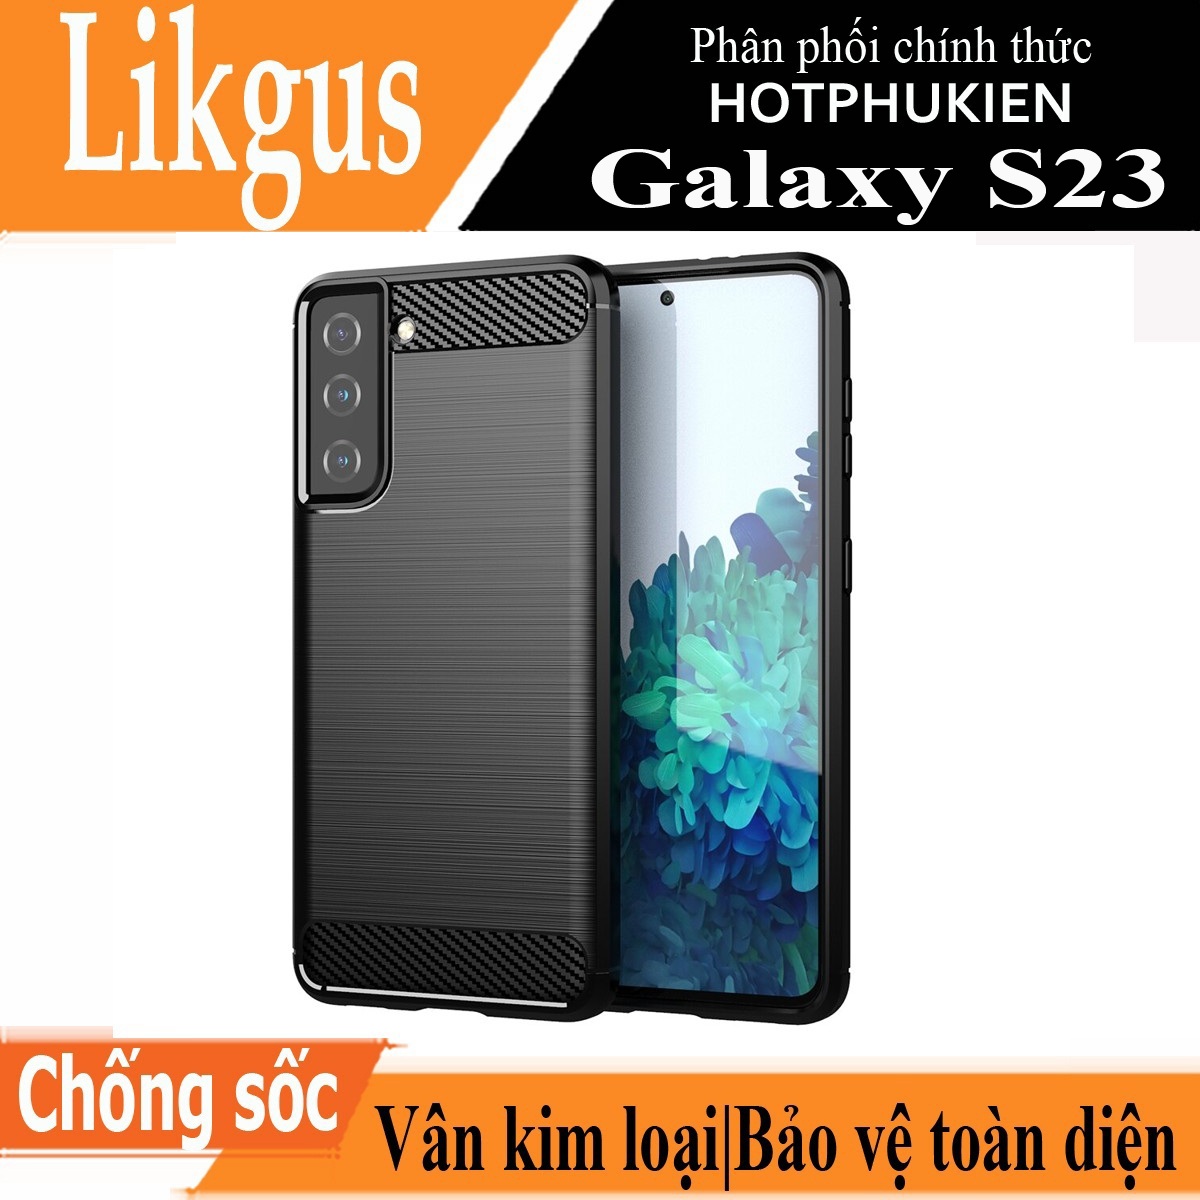 Ốp lưng chống sốc vân kim loại cho Samsung Galaxy S23 hiệu Likgus